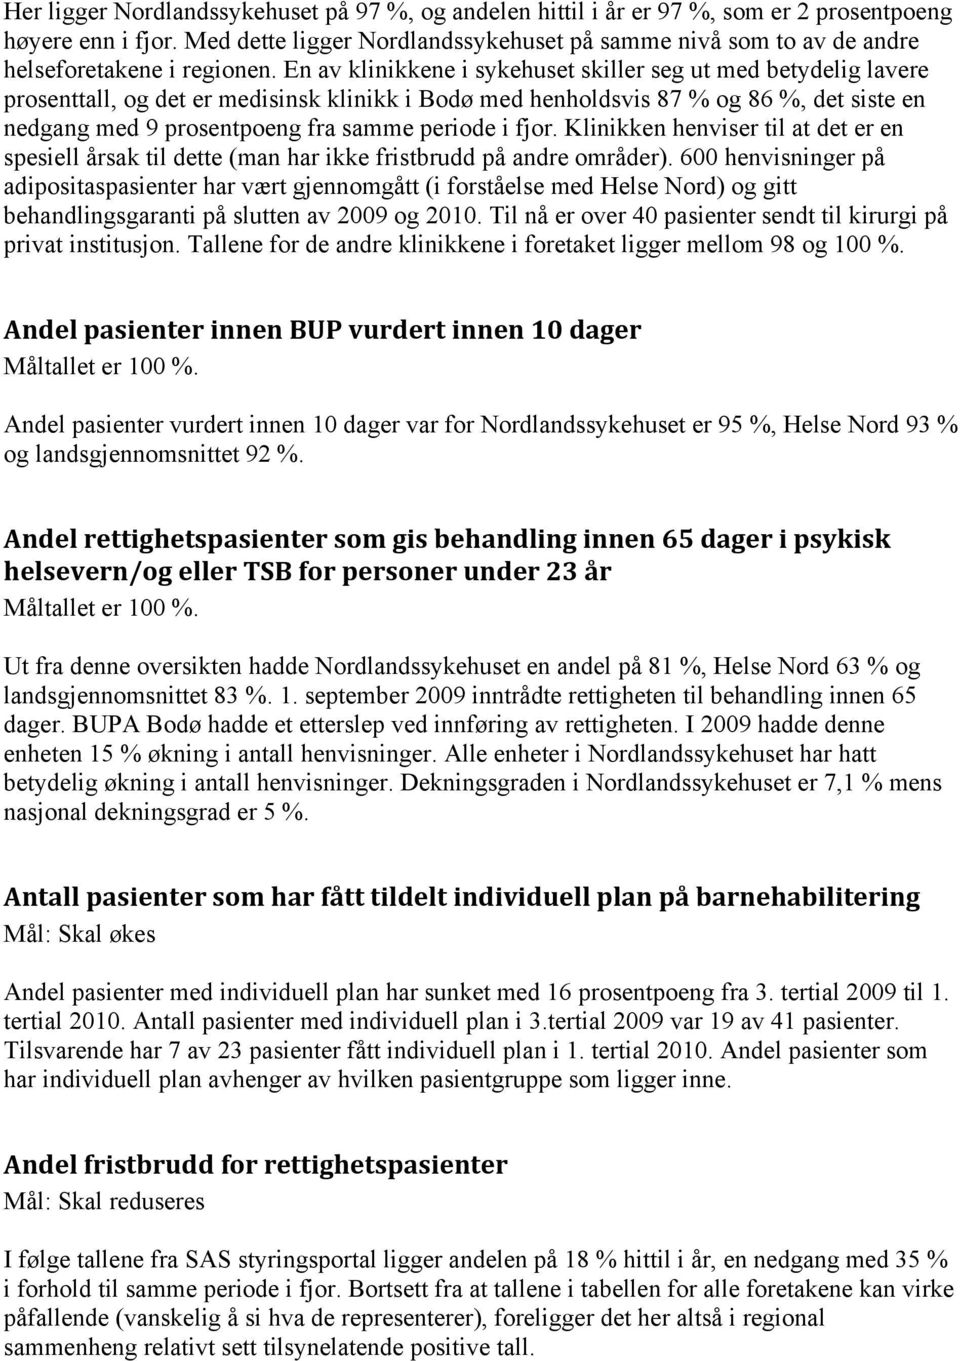 En av klinikkene i sykehuset skiller seg ut med betydelig lavere prosenttall, og det er medisinsk klinikk i Bodø med henholdsvis 87 % og 86 %, det siste en nedgang med 9 prosentpoeng fra samme